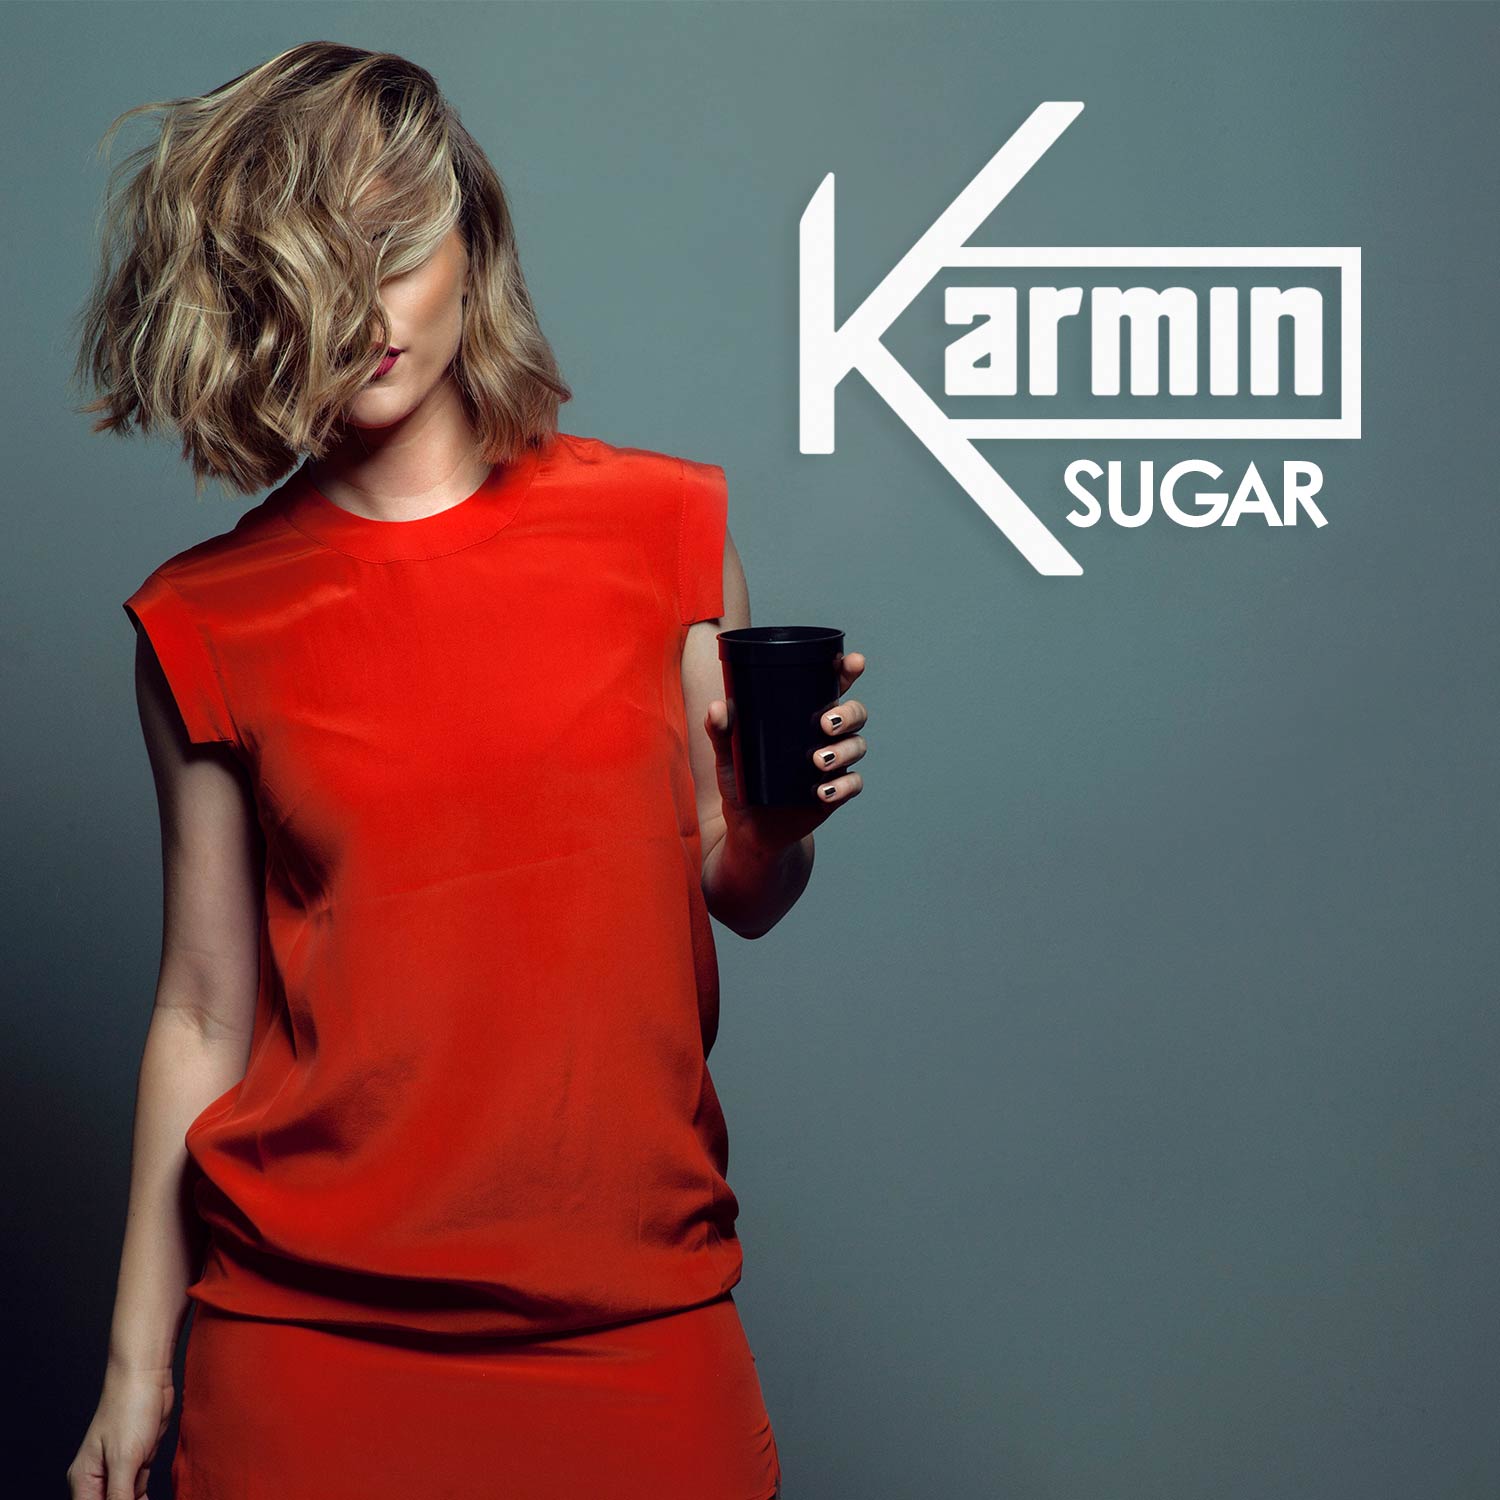 Karmin: Sugar, la portada de la canción1500 x 1500